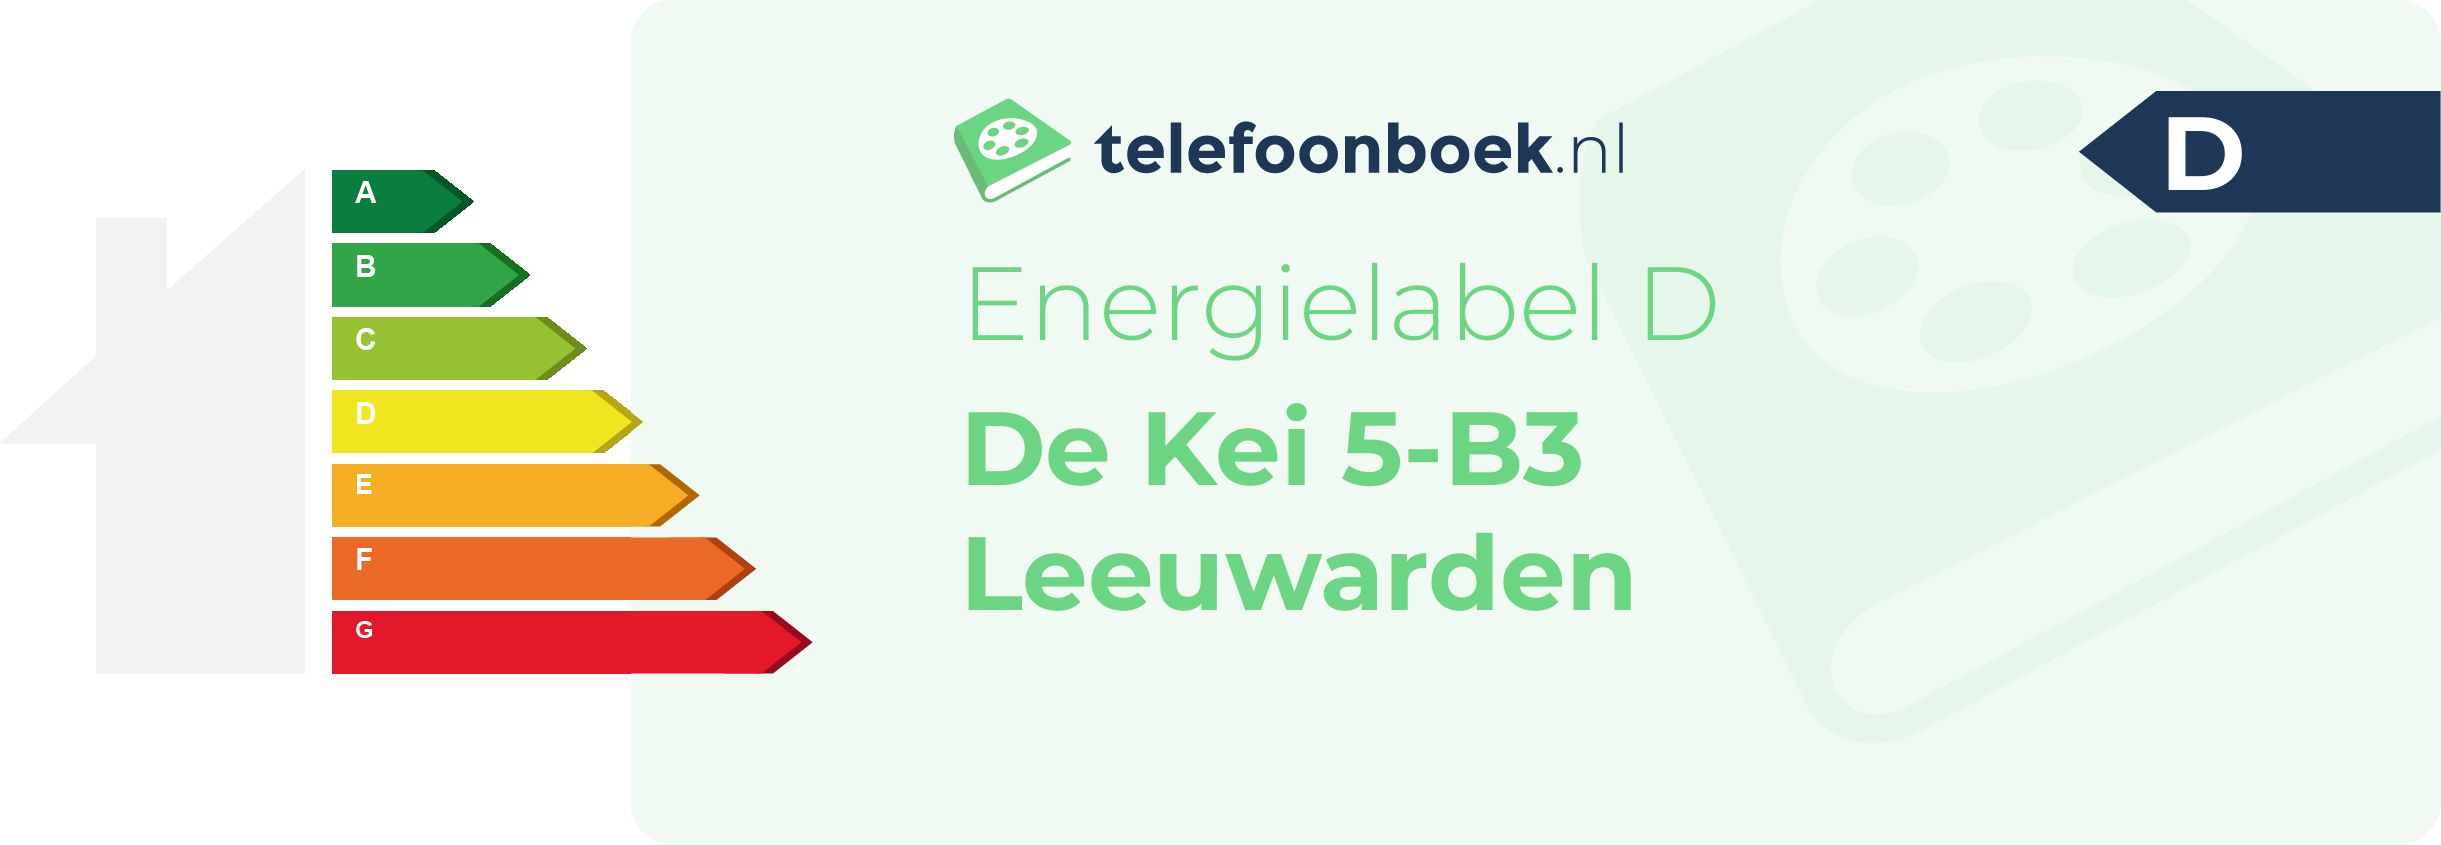 Energielabel De Kei 5-B3 Leeuwarden